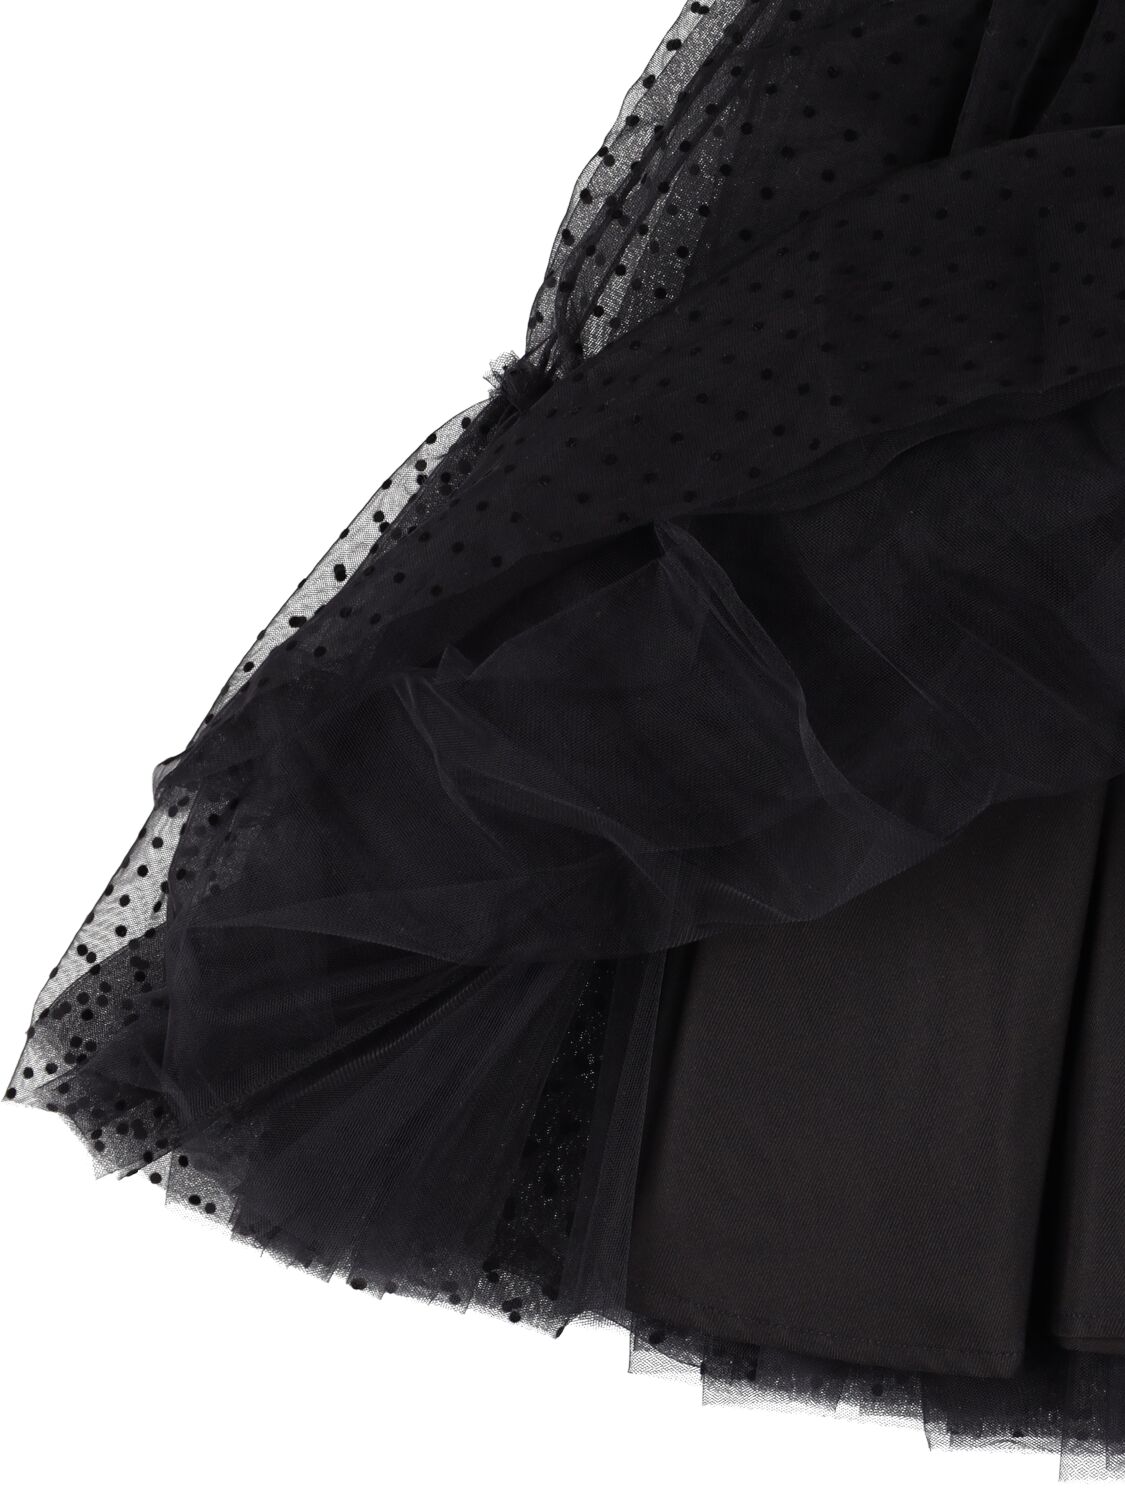 Shop Monnalisa Tulle Dress W/ Flower In Black